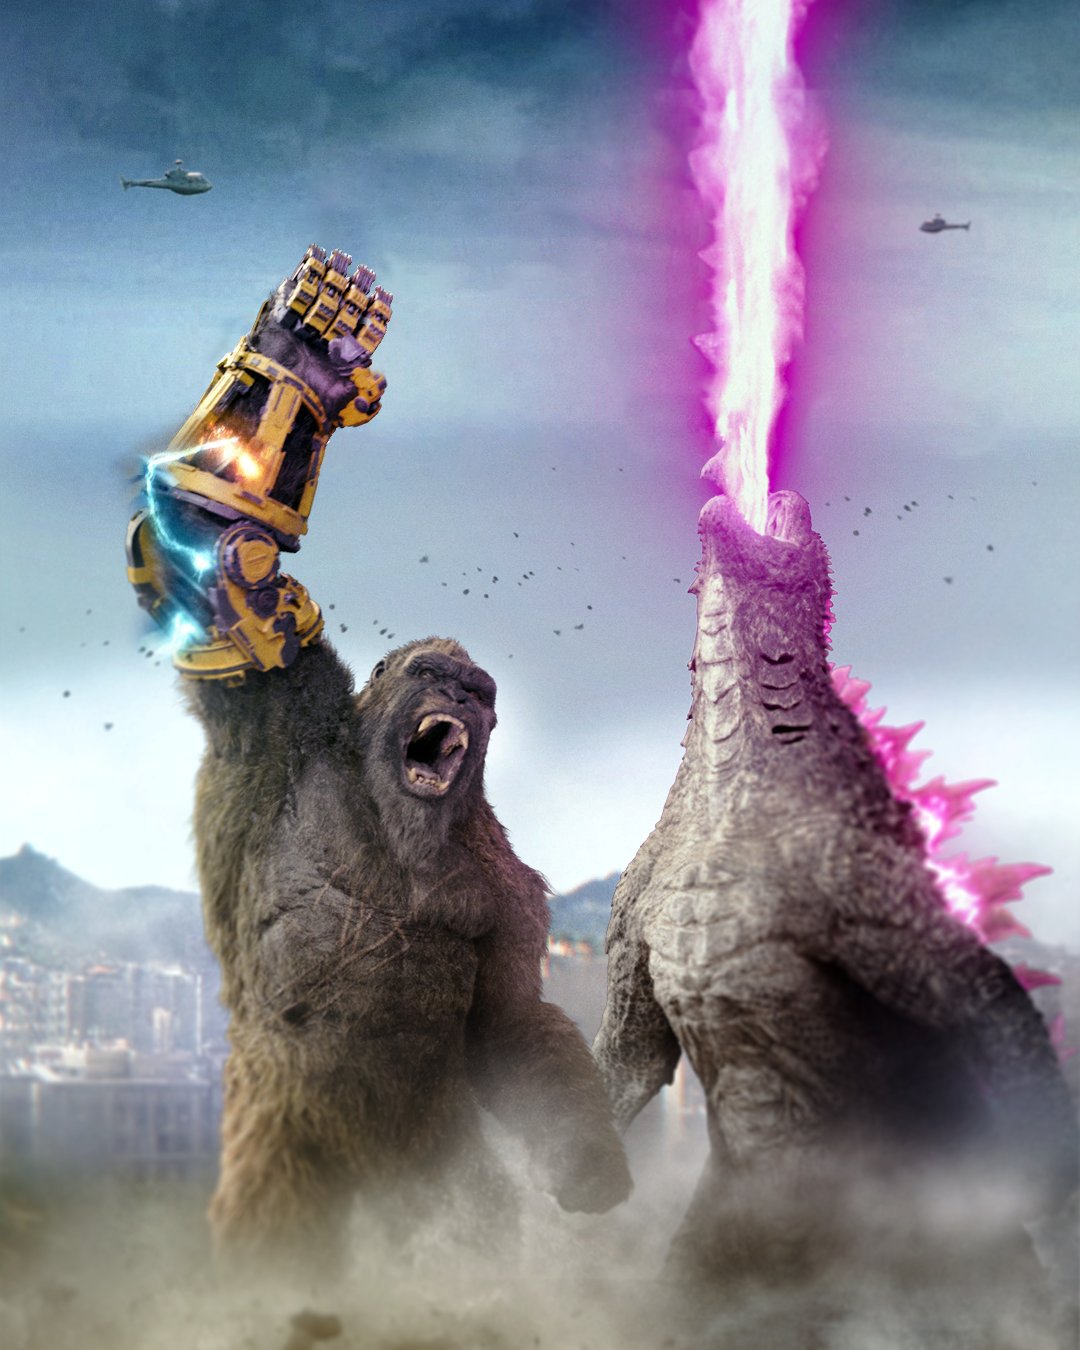 Background Godzilla X Kong Wallpaper